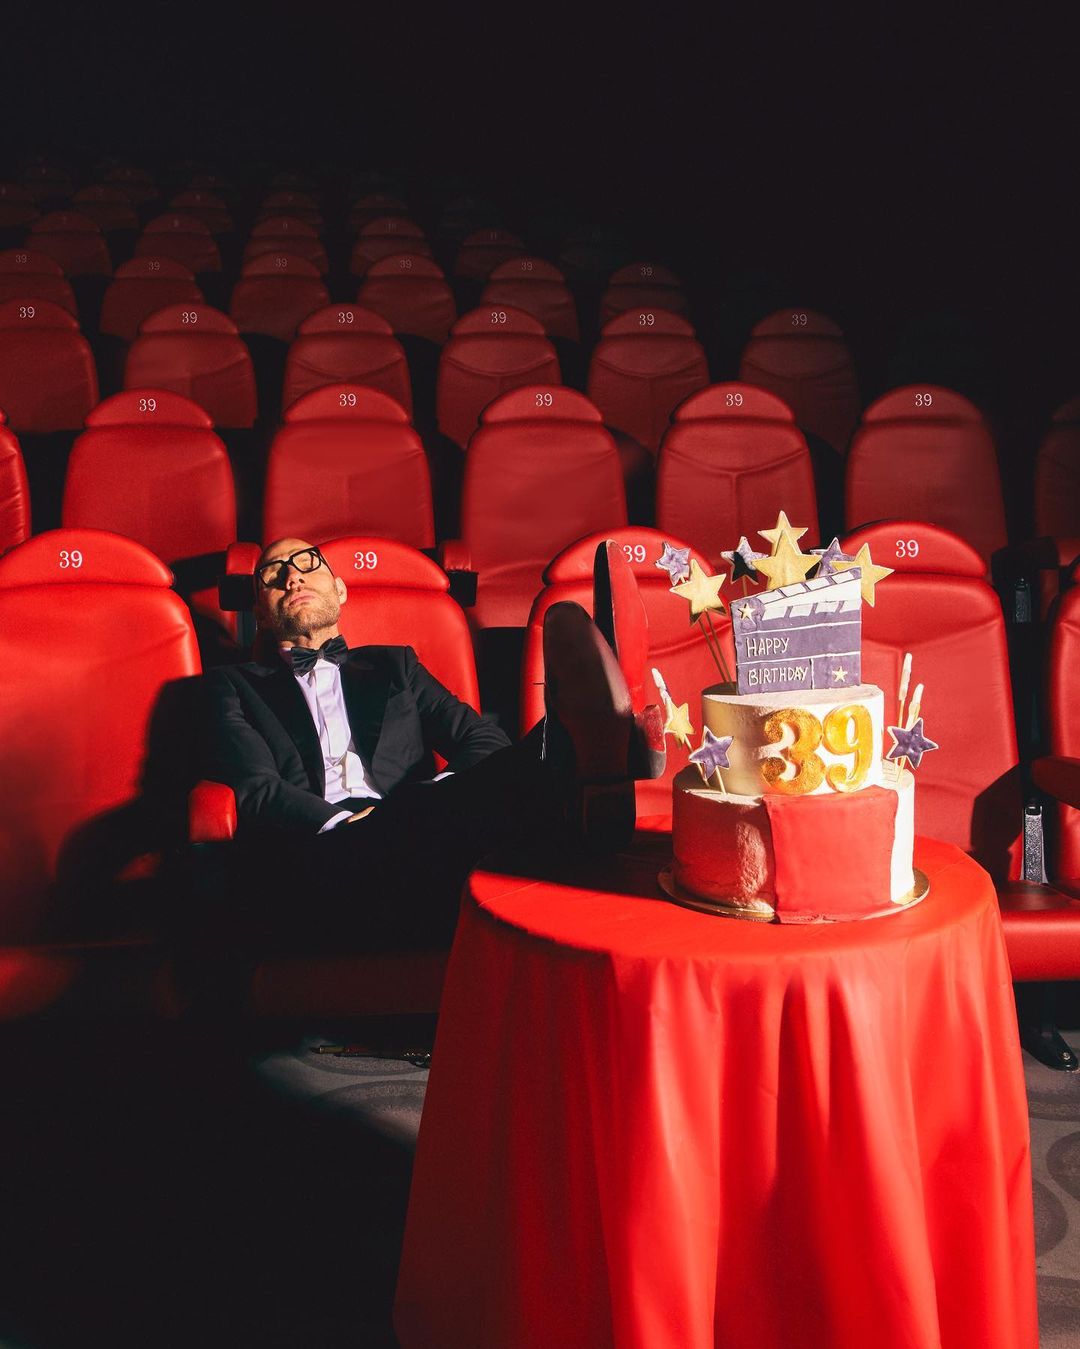 Анатолий Сульянов. И его тортик. Где-то спит в кинотеатре. Недавно ему исполнилось 39 лет, но почему он один?